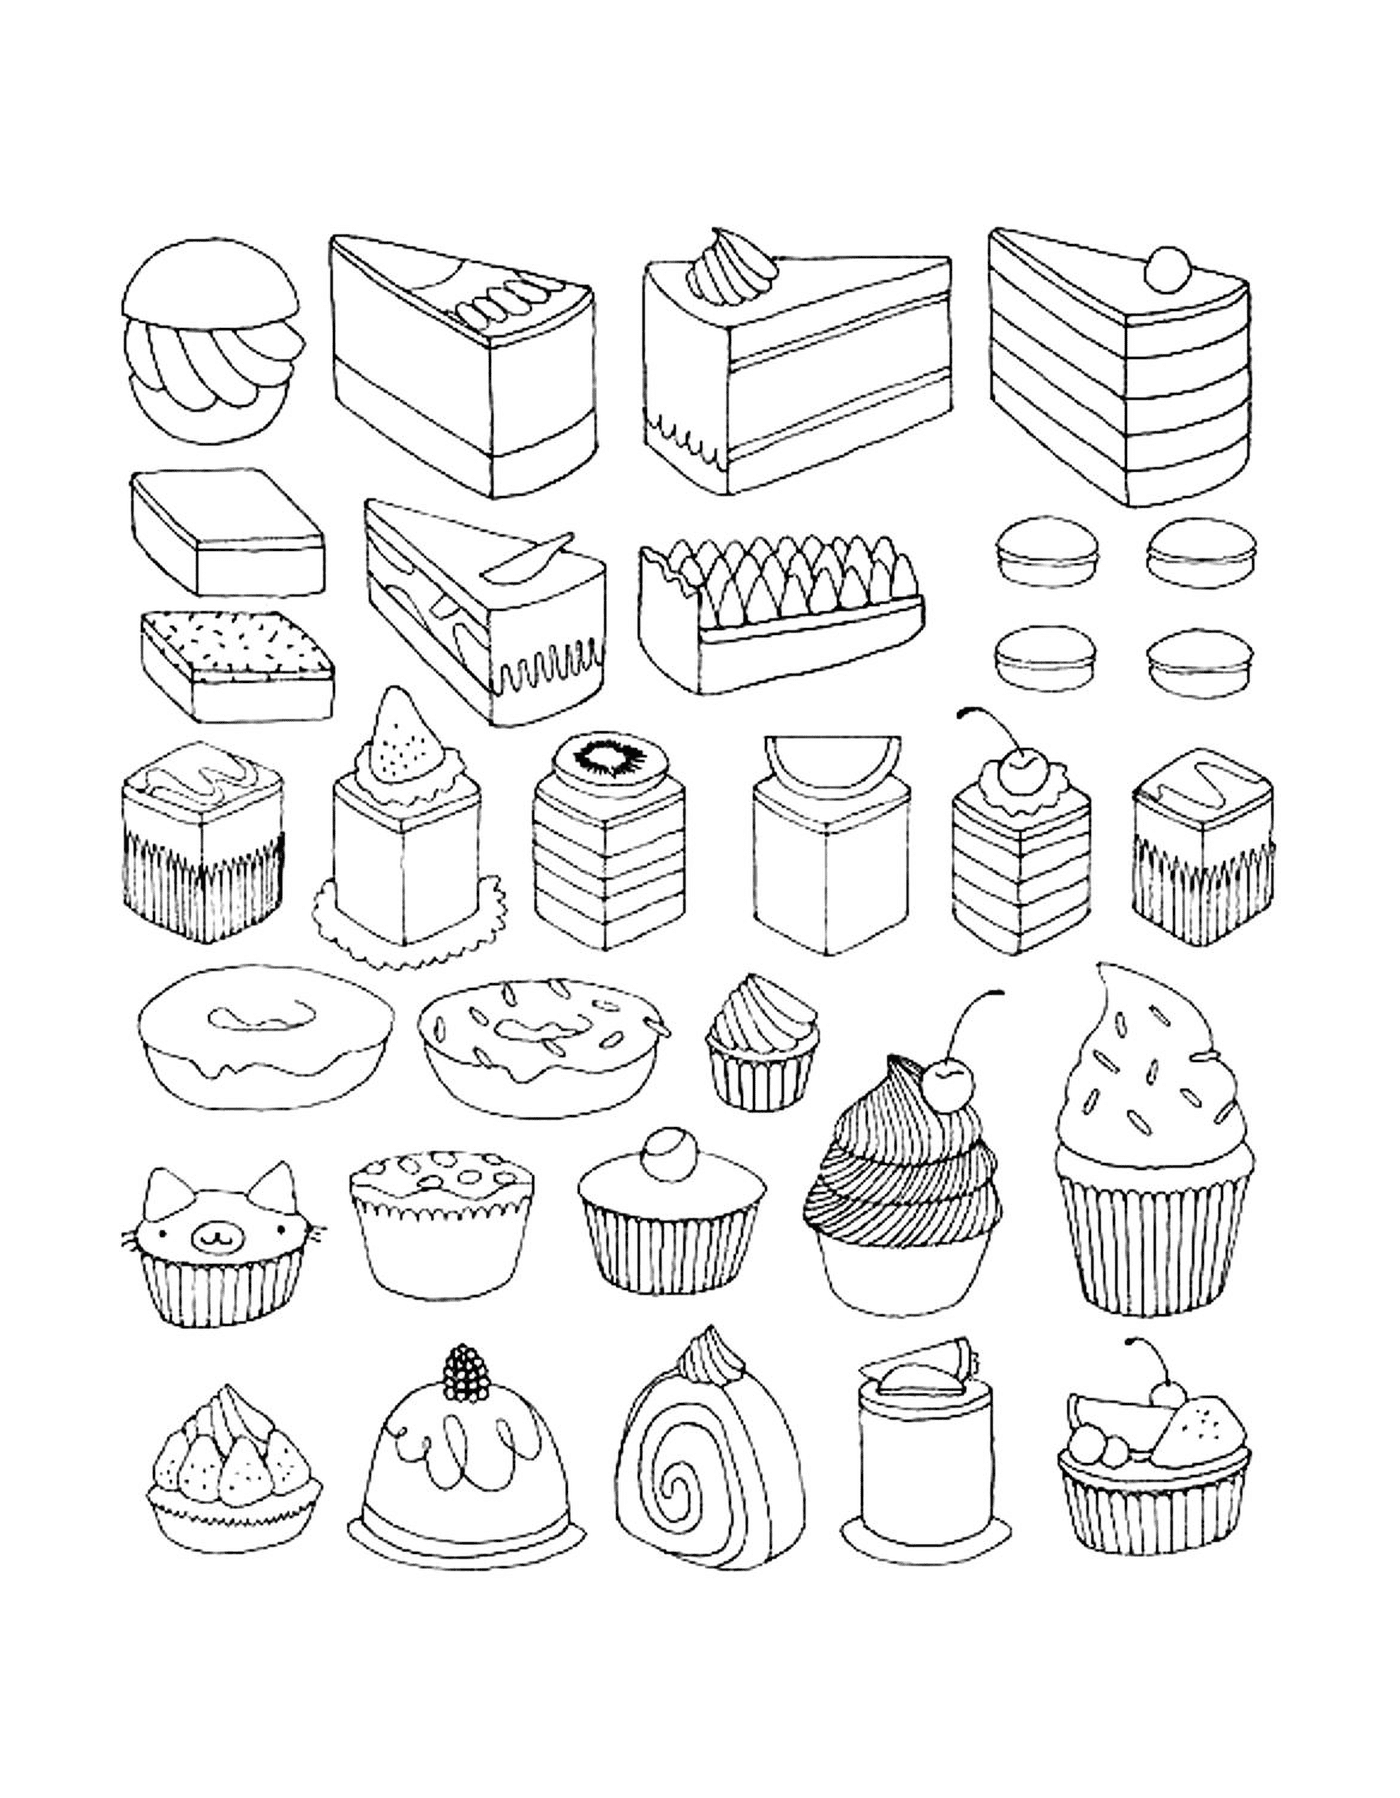   Des cupcakes et petits gâteaux pour adultes, variés et appétissants 